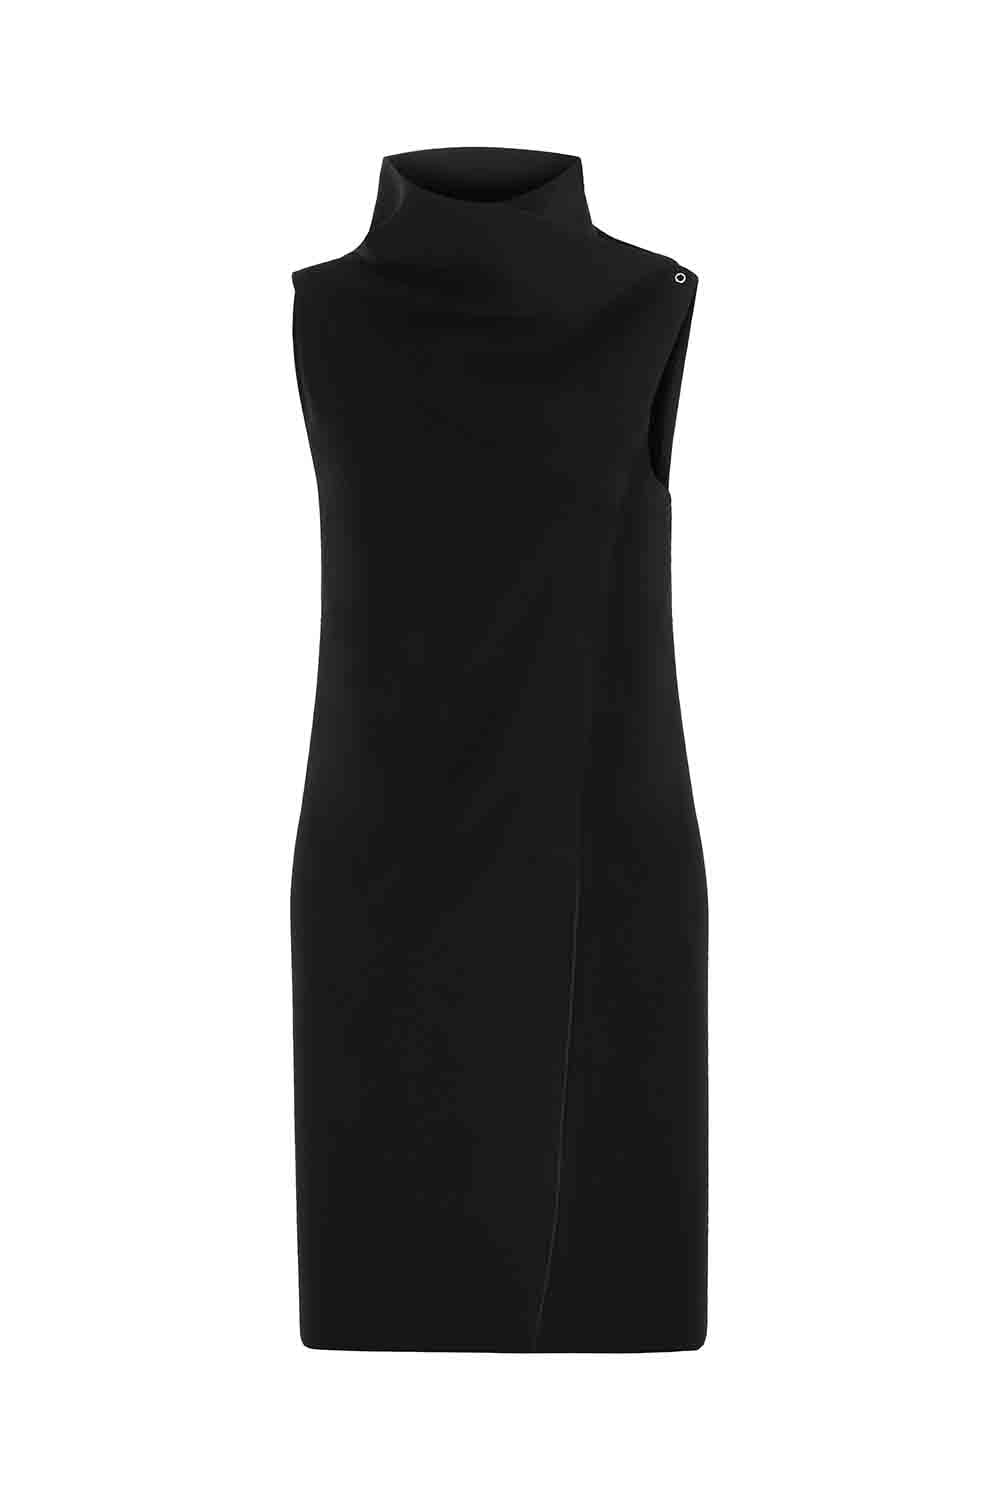 Sinem Babacan - Multifonksiyonel Kısa Elbise 3 in 1 Siyah 8